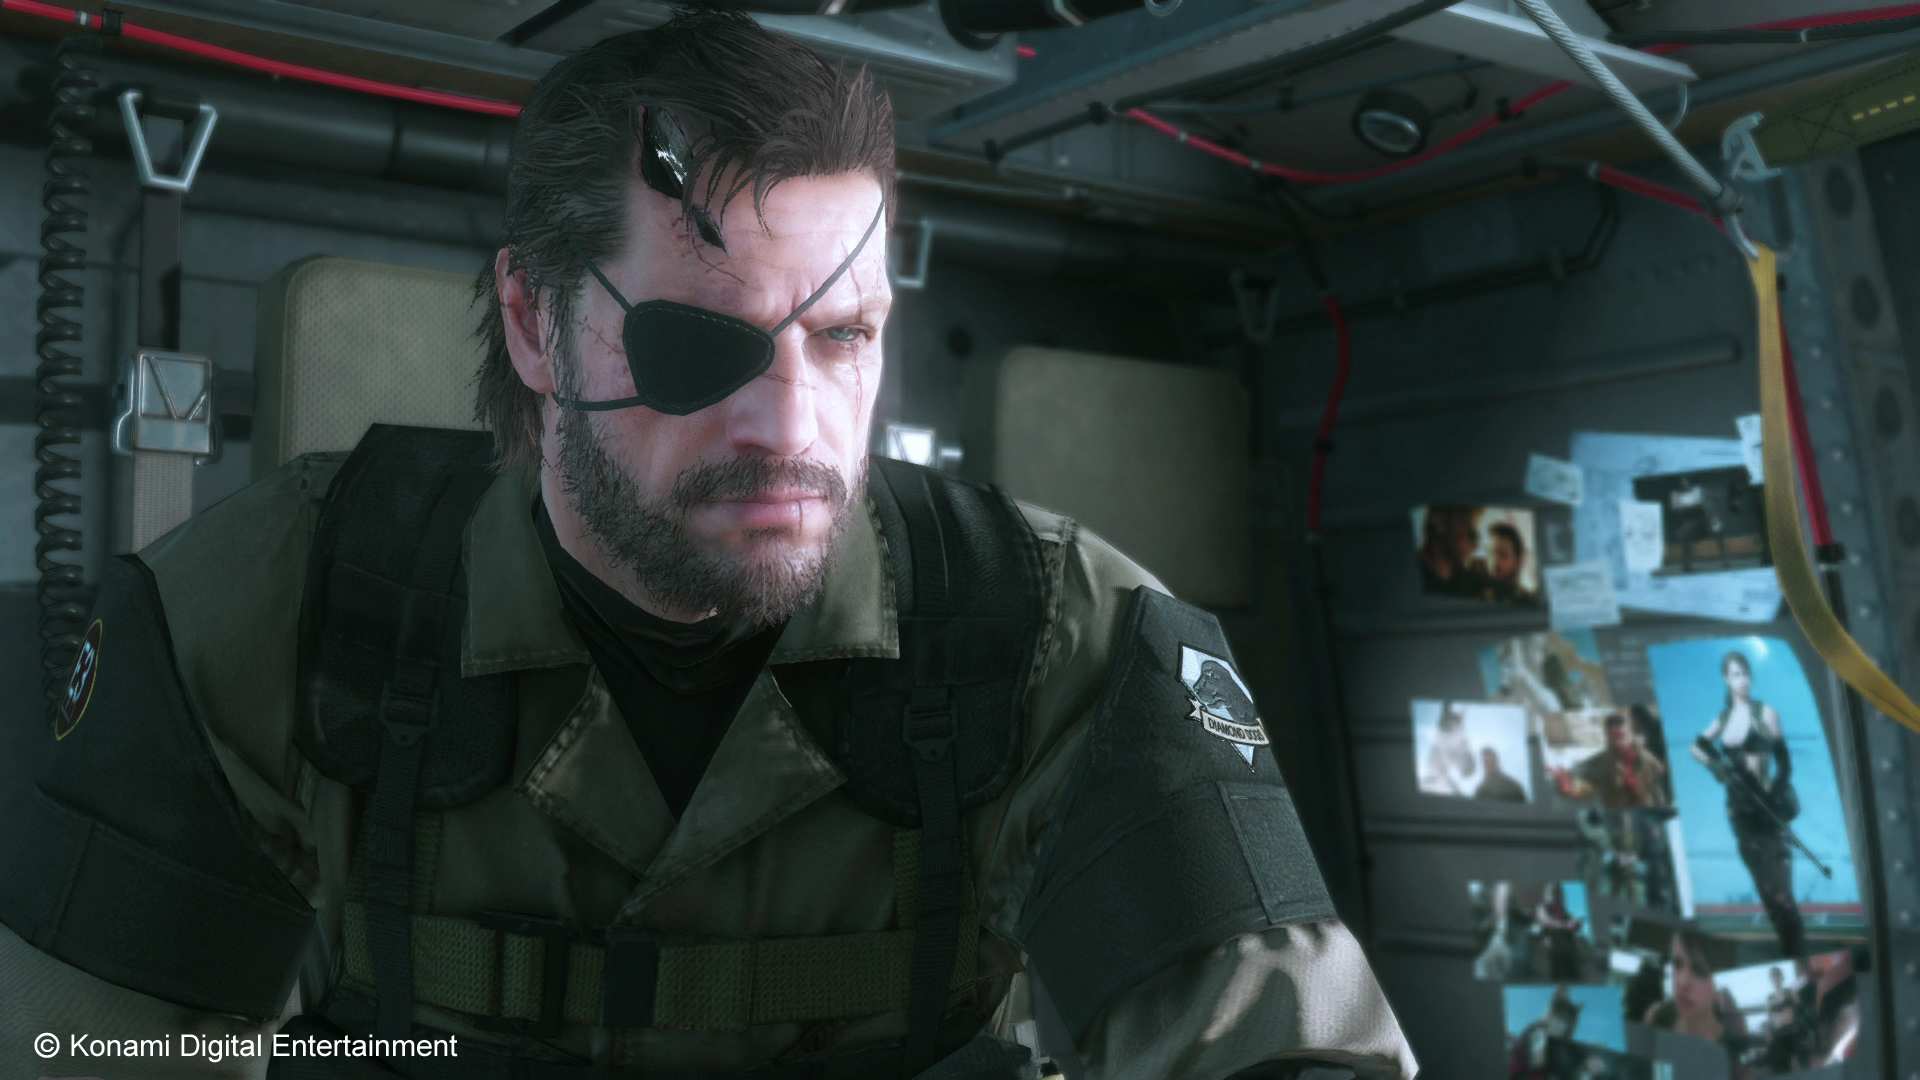 Mgs terminal portal. Metal Gear Solid 5: the Phantom Pain. Солид Снейк 5. Биг босс МГС 5.